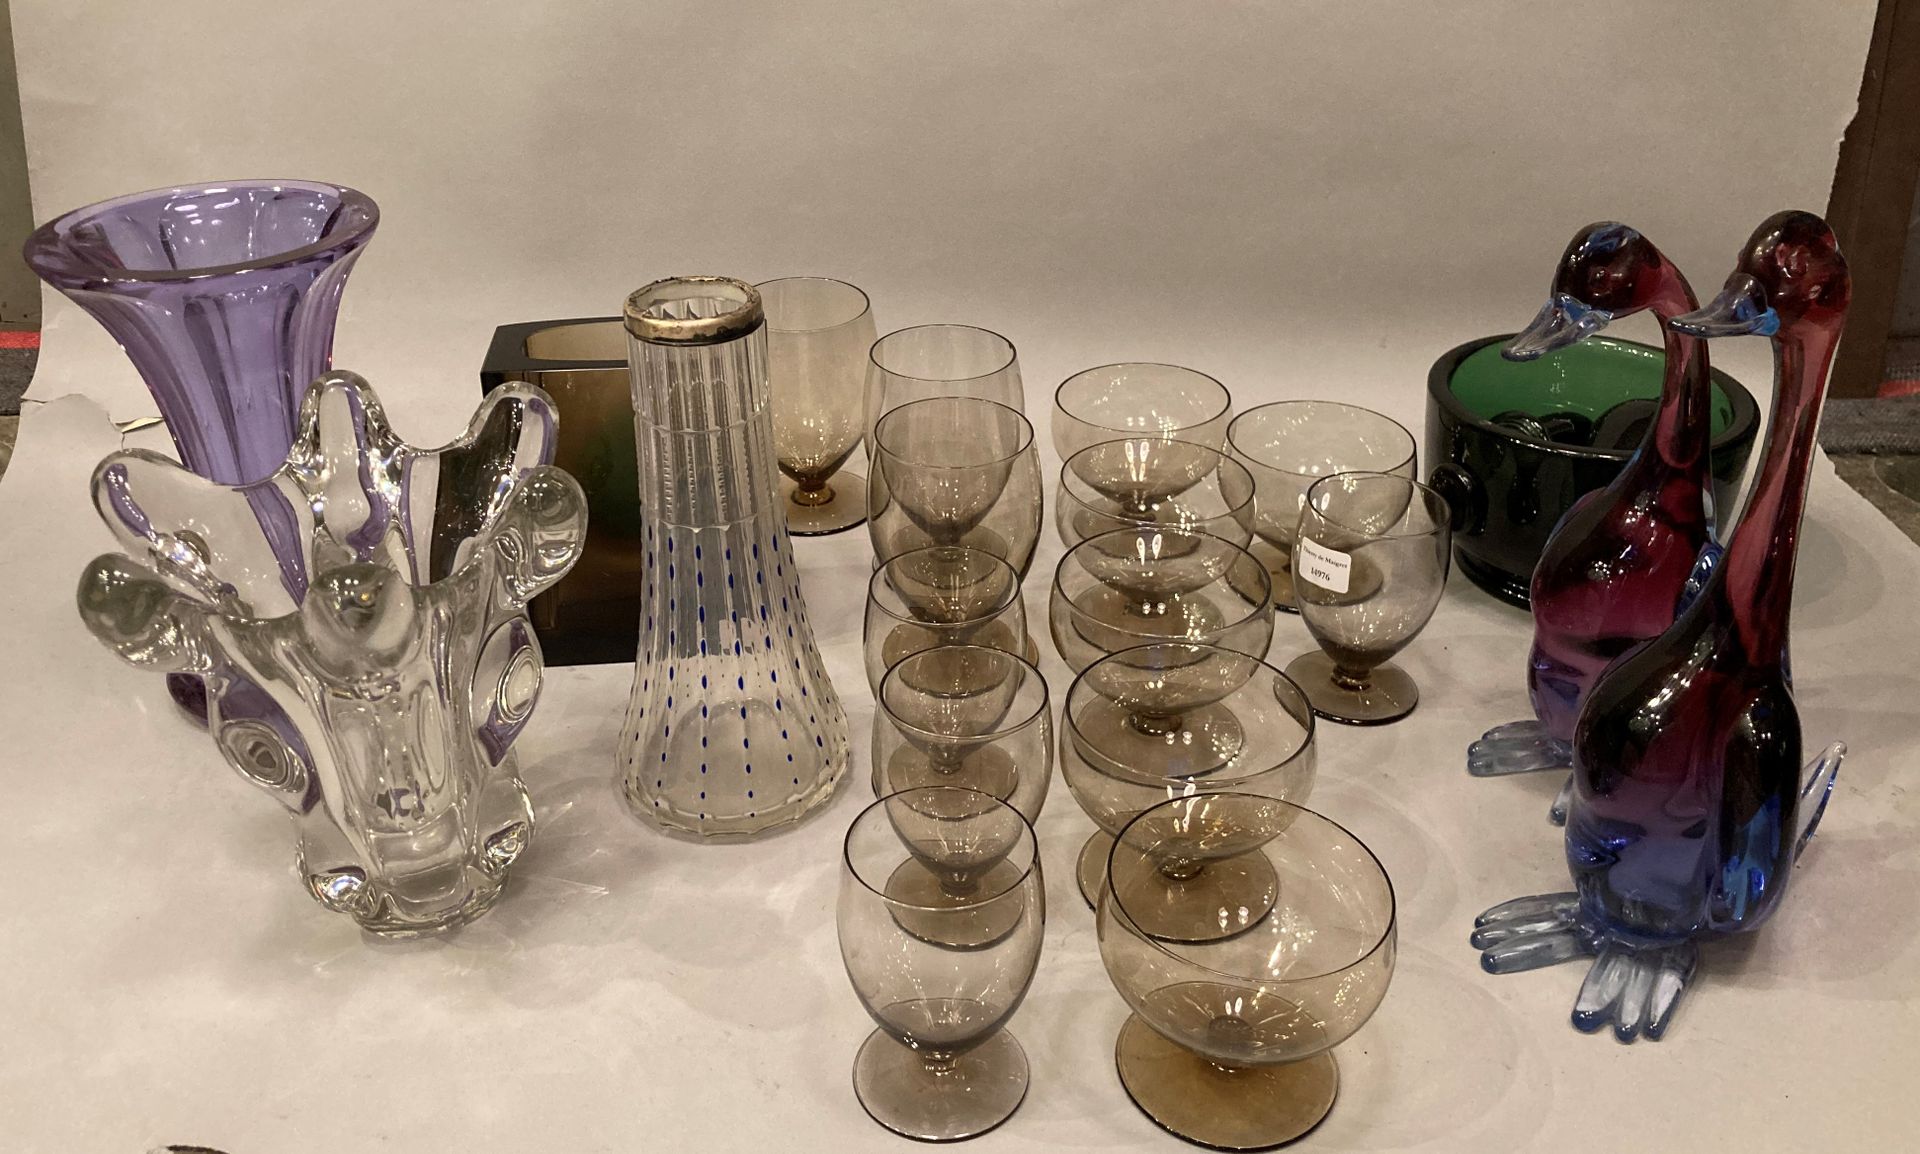 Null 套装玻璃器皿，包括烟熏玻璃服务部分、花瓶（14至21厘米）和杵（破臼）。

划痕

原样出售